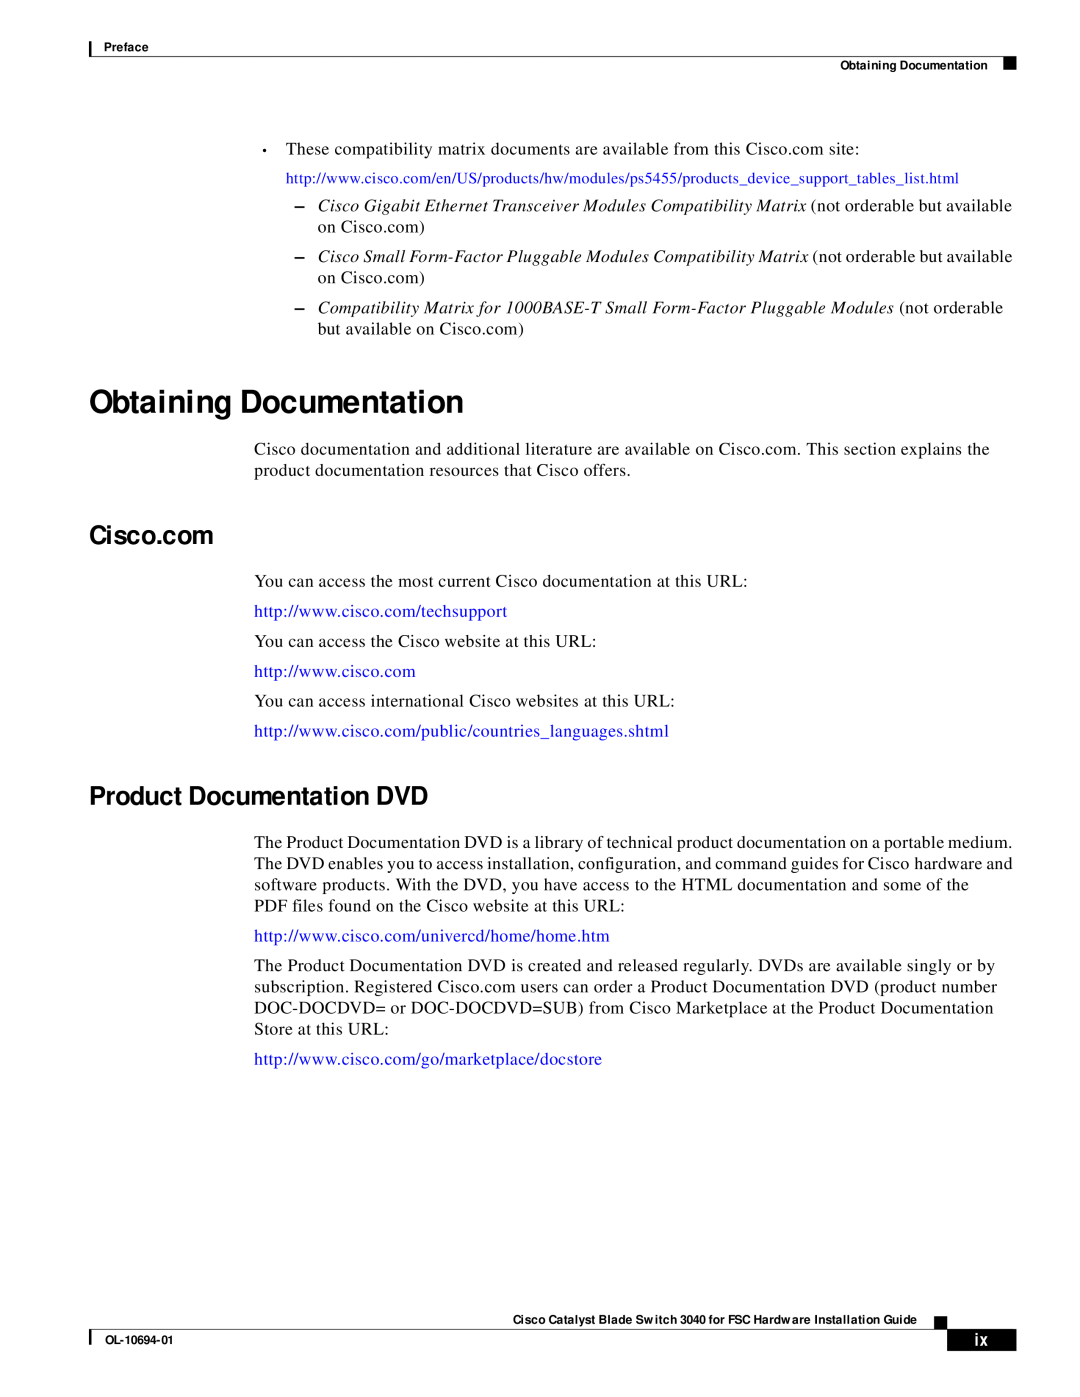 3D Connexion OL-10694-01 appendix Obtaining Documentation, Product Documentation DVD 